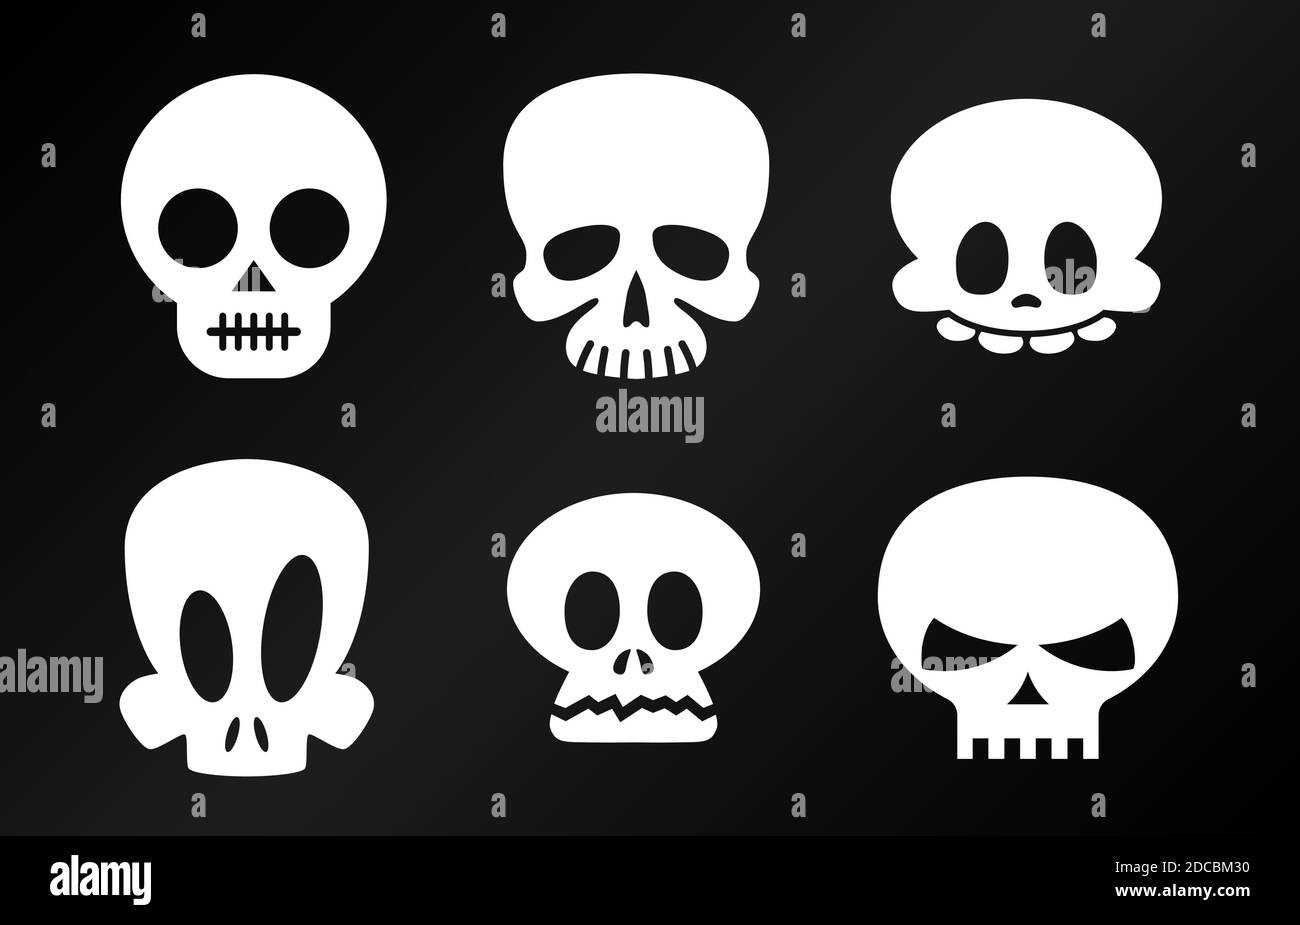 Funny white halloween skulls skeleton heads vector illustration Stock Vector